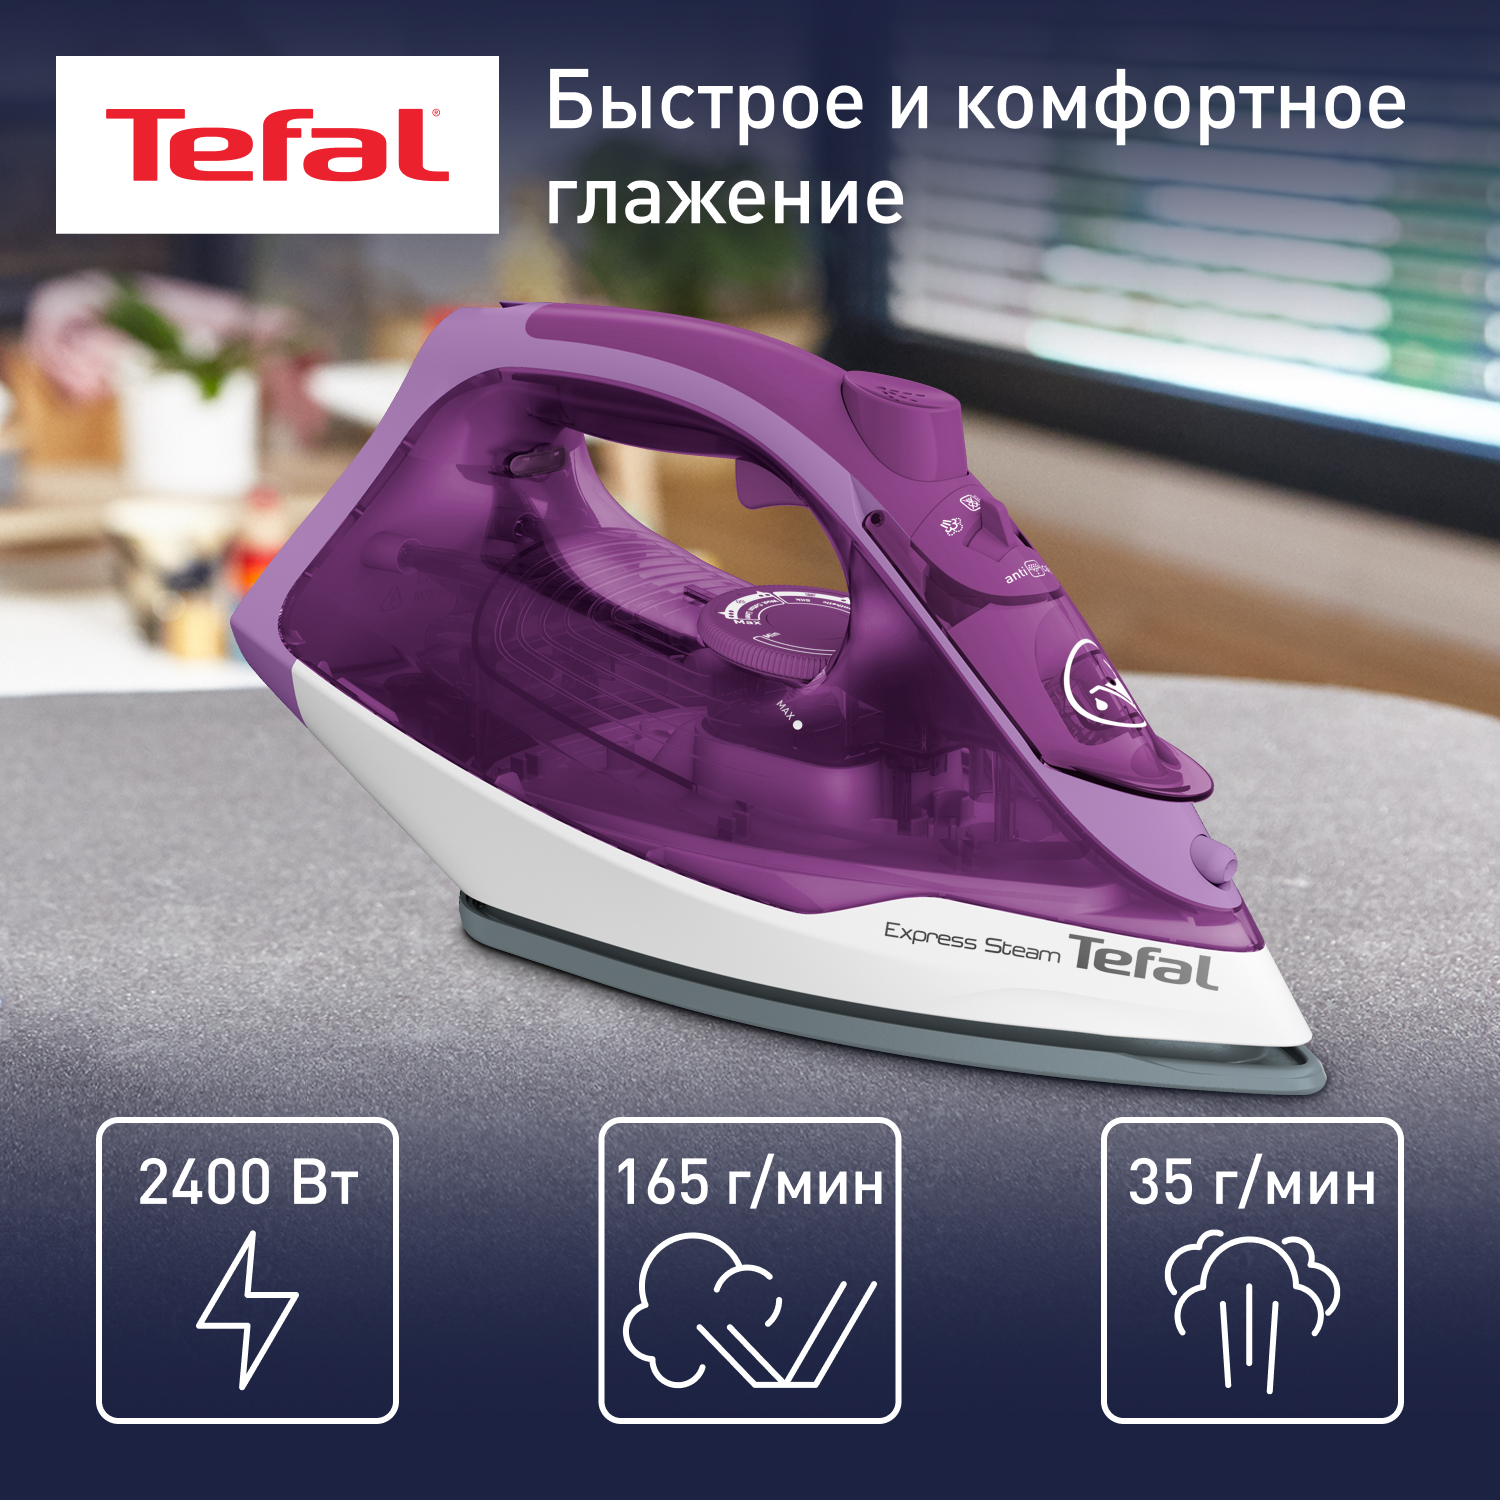 Утюг Tefal FV2836E0, купить в Москве, цены в интернет-магазинах на Мегамаркет